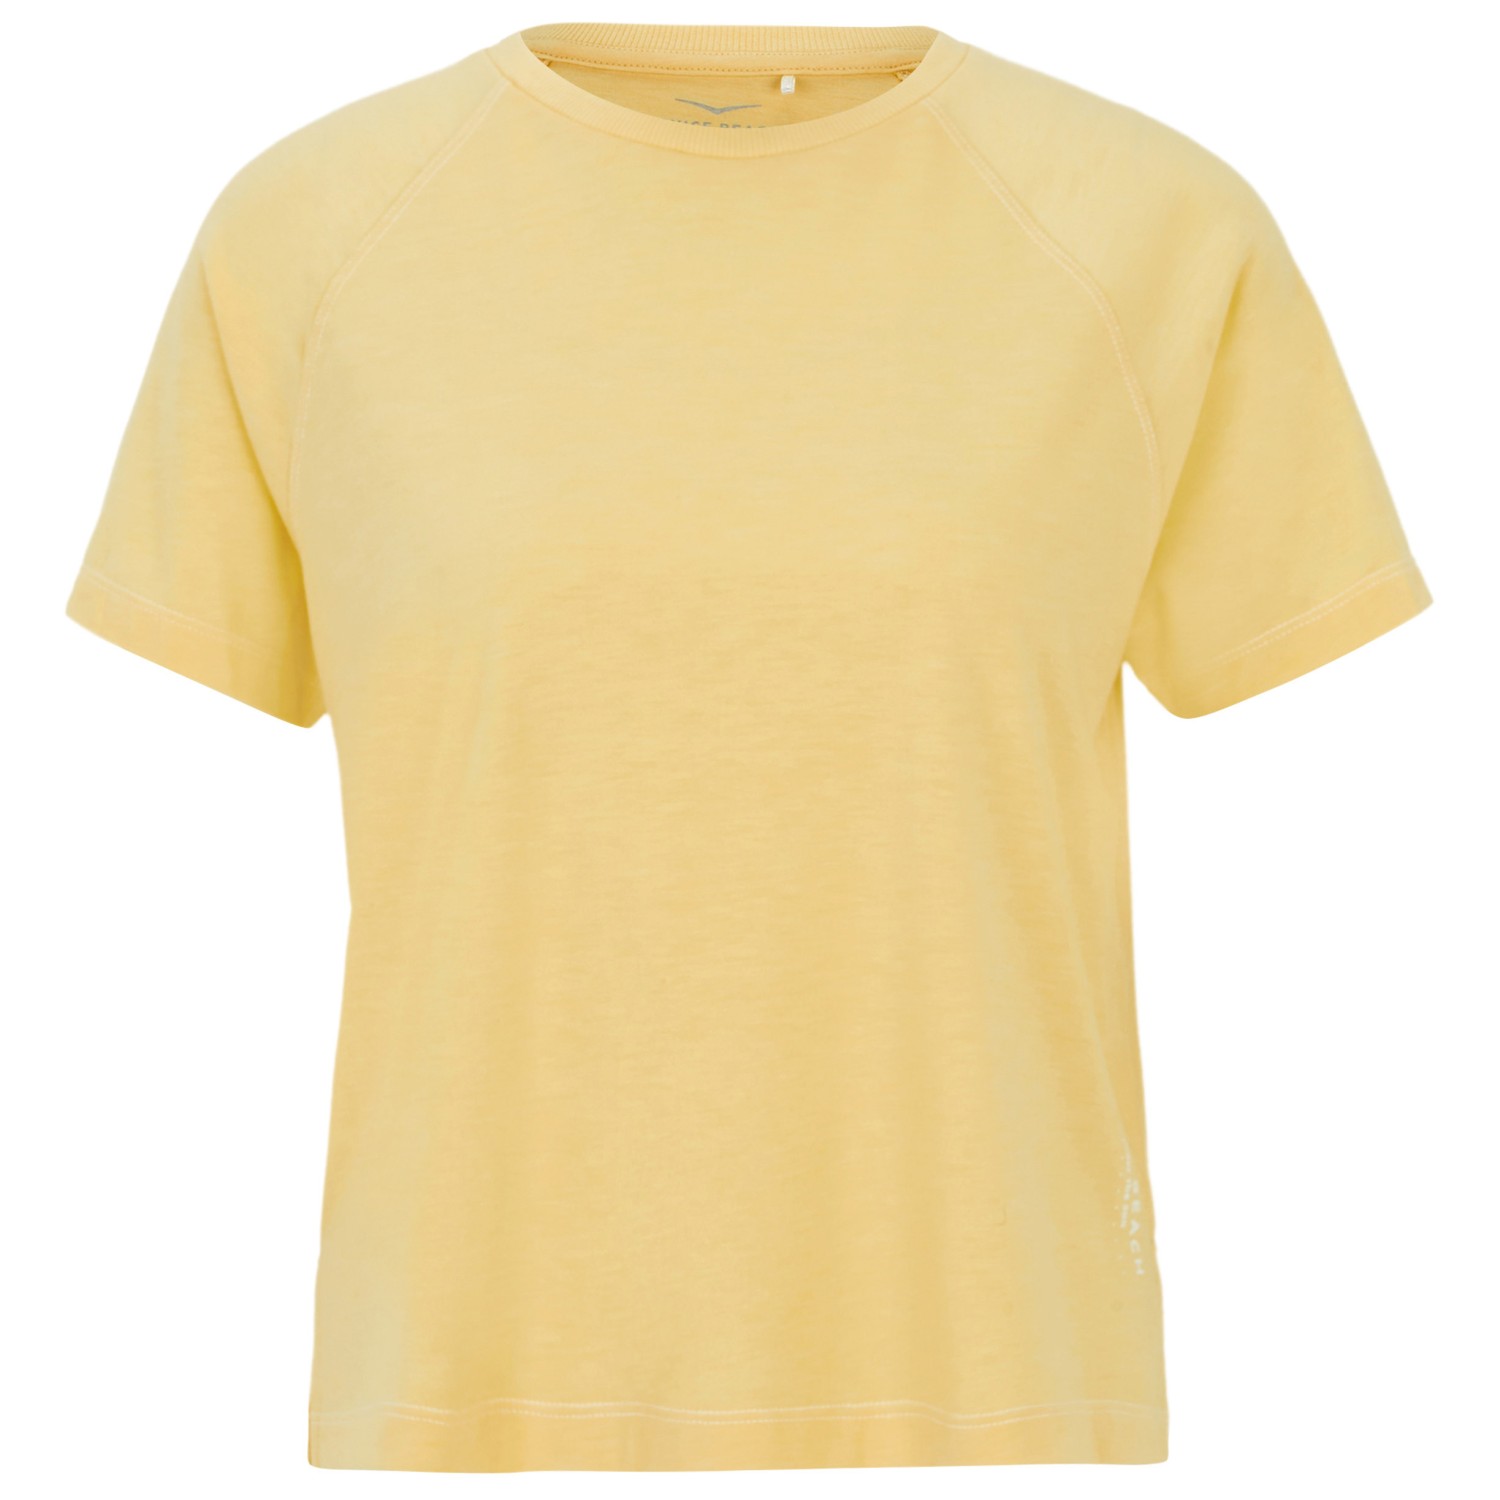 Функциональная рубашка Venice Beach Women's Mya T Shirt, цвет Sunshine mya bay позолоченный кулон на цепи red eye venice с подвеской из красного стекла